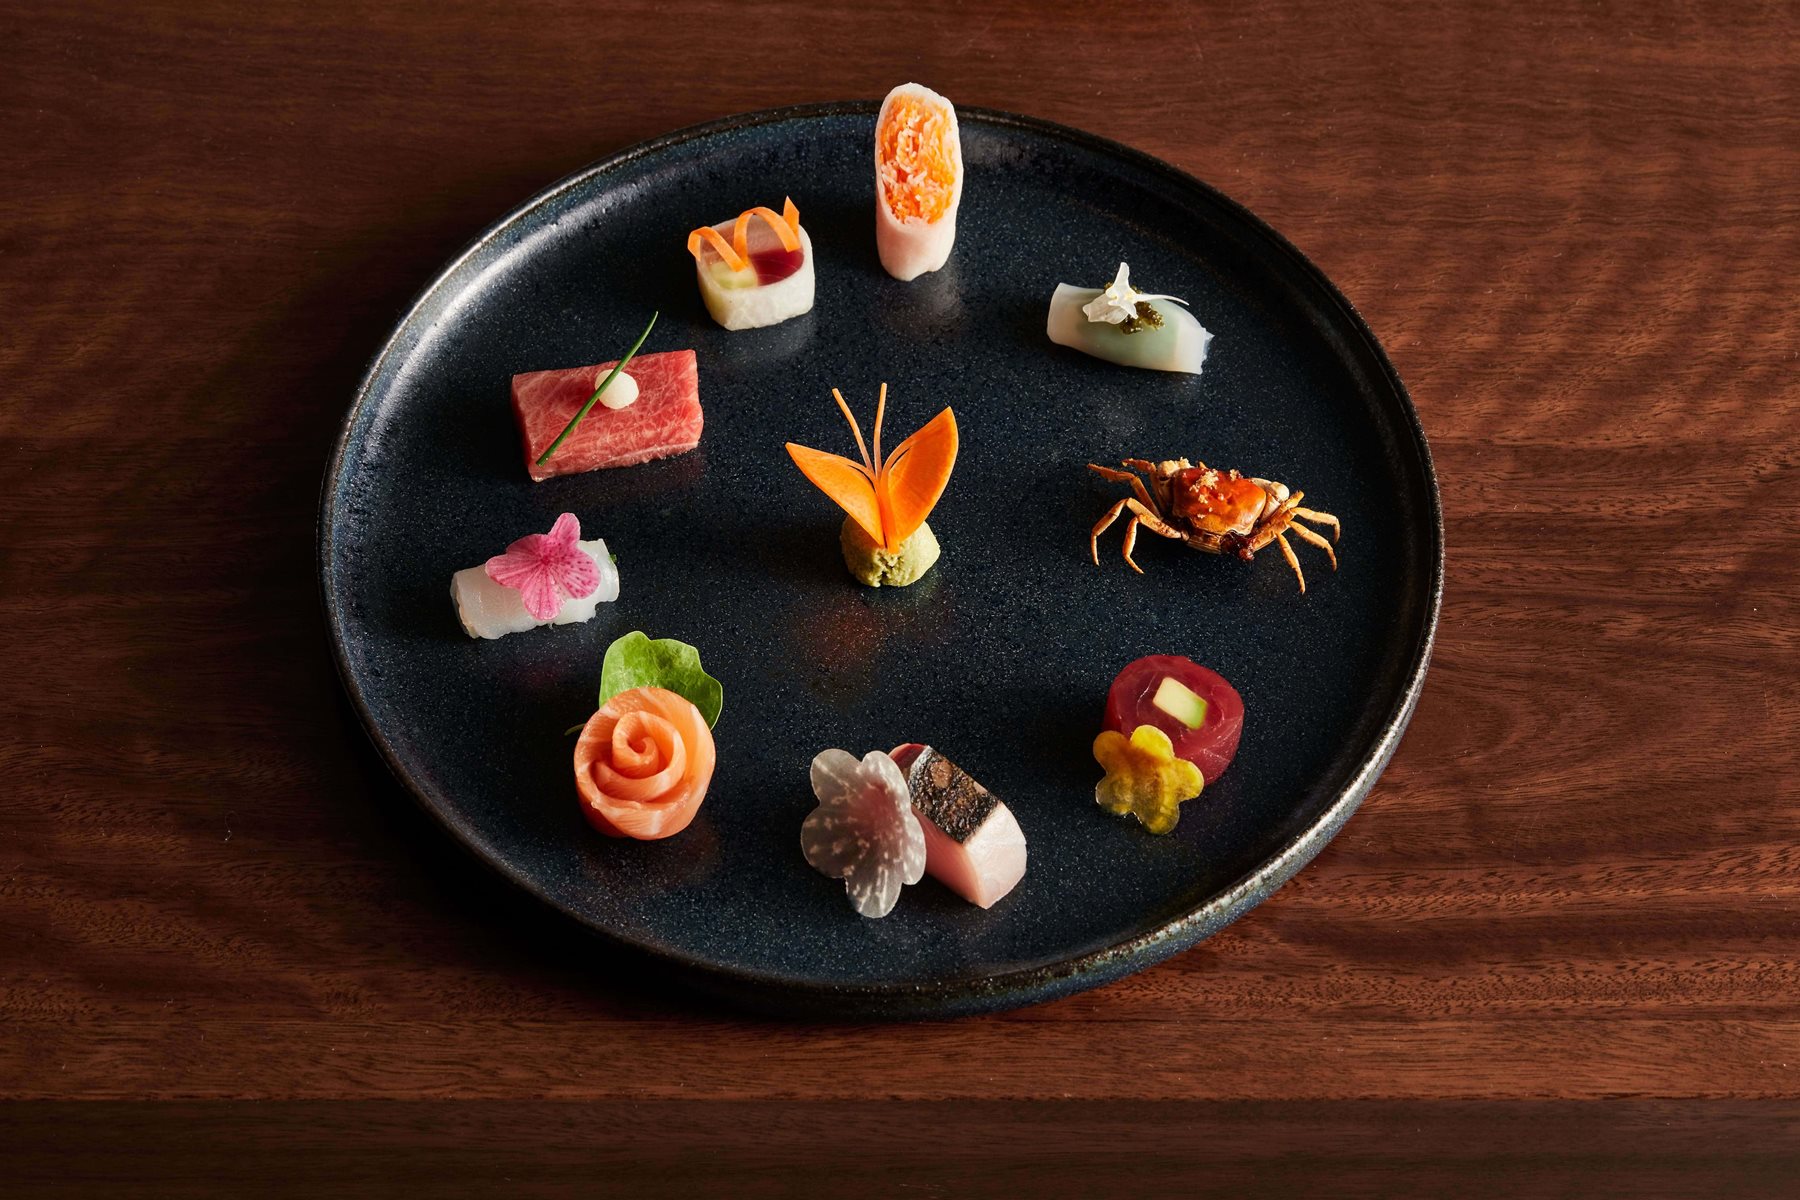 Chef Yoshii's sashimi dish
